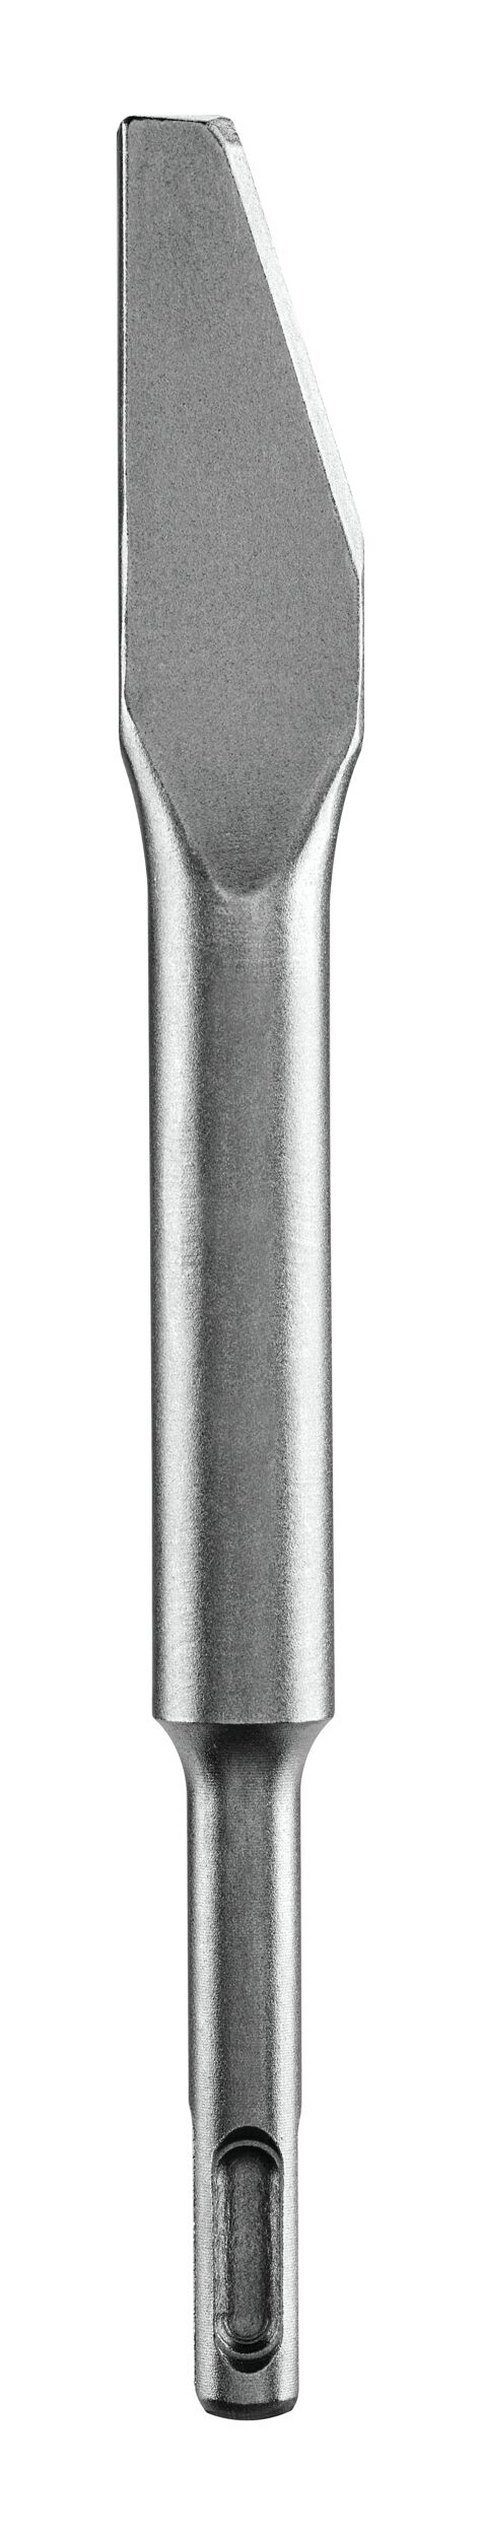 BOSCH Universalbohrer, Mörtelmeißel mit x SDS plus-Aufnahme 200 - 6,5 mm